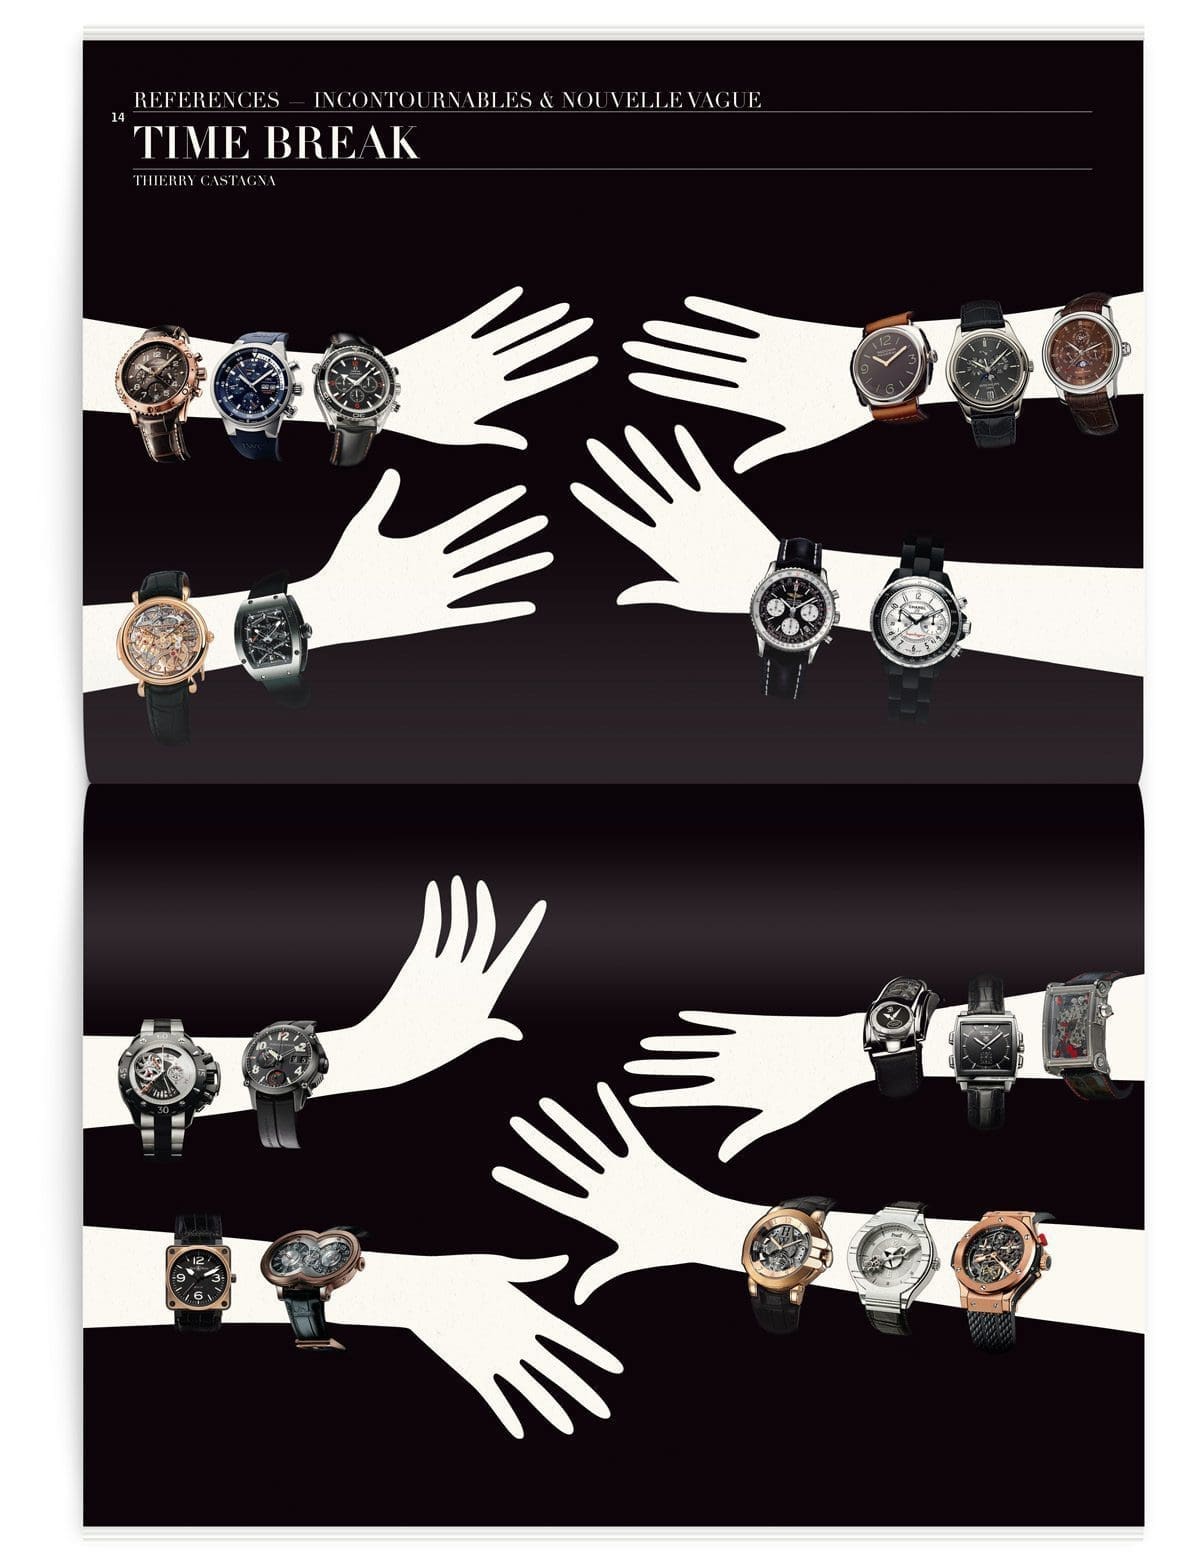 Montres incontournables et style nouvelle vague, montres de marque pour le magazine Iconofly, revue d’art, design IchetKar